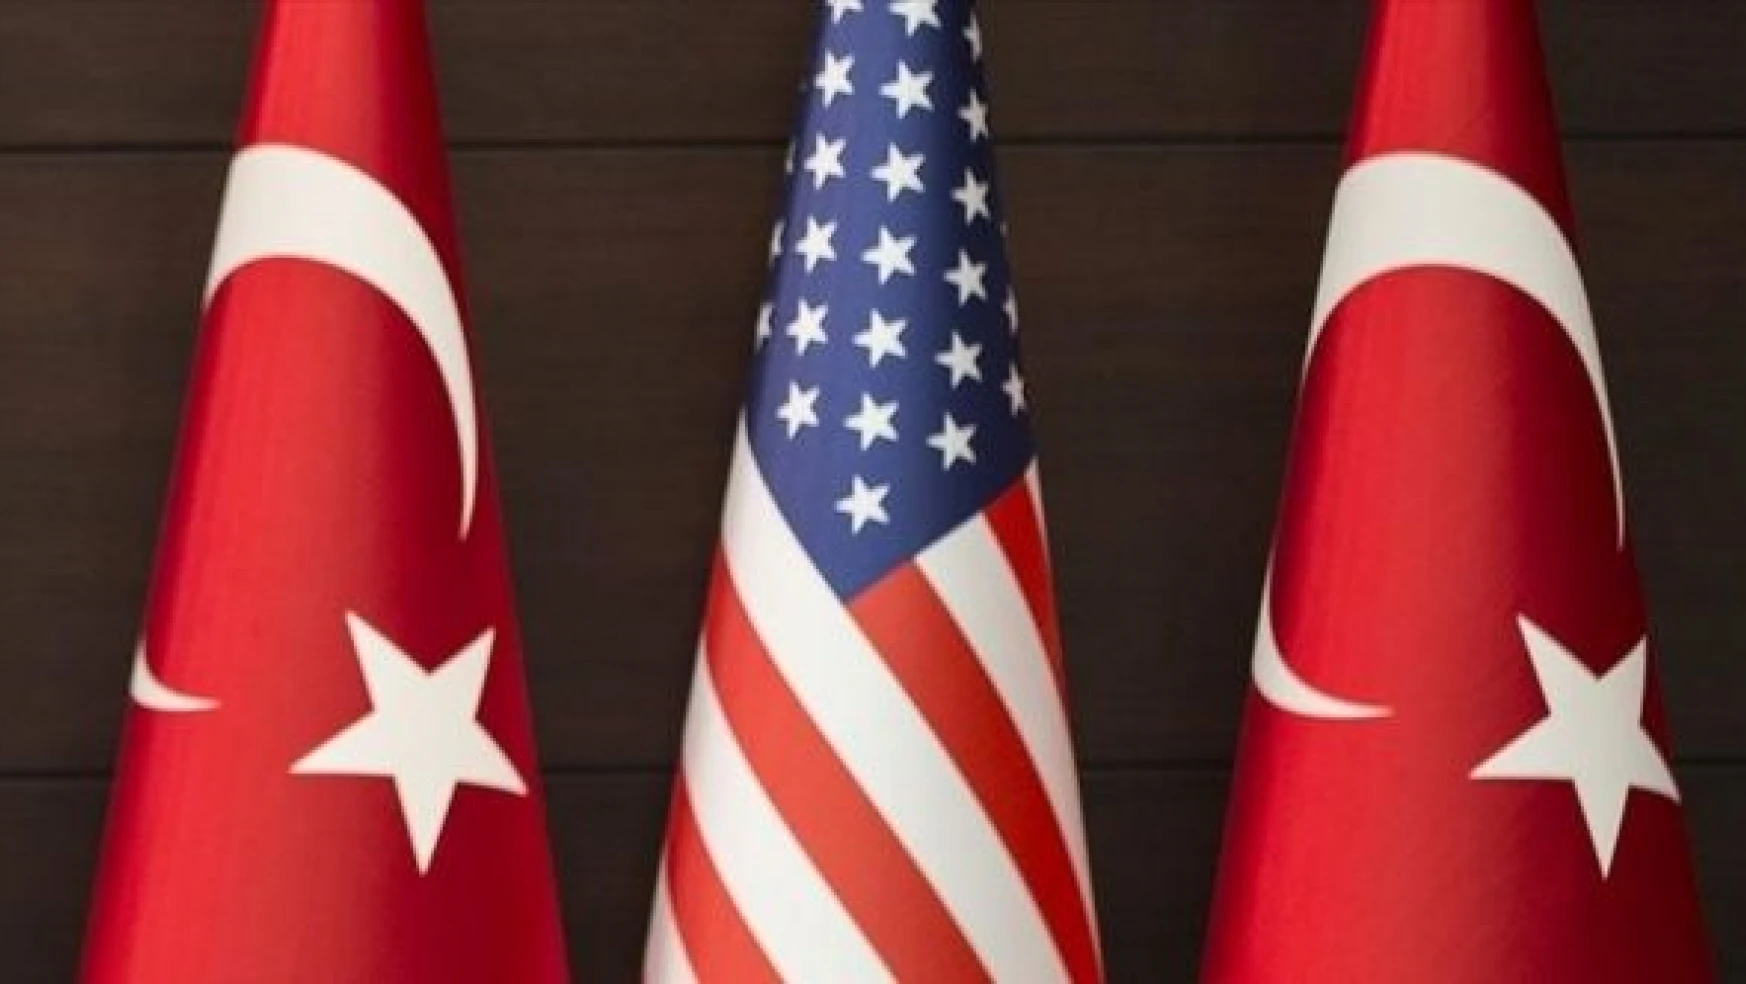 Dışişleri Bakanlığı: Türkiye-ABD Stratejik Mekanizması başlatıldı